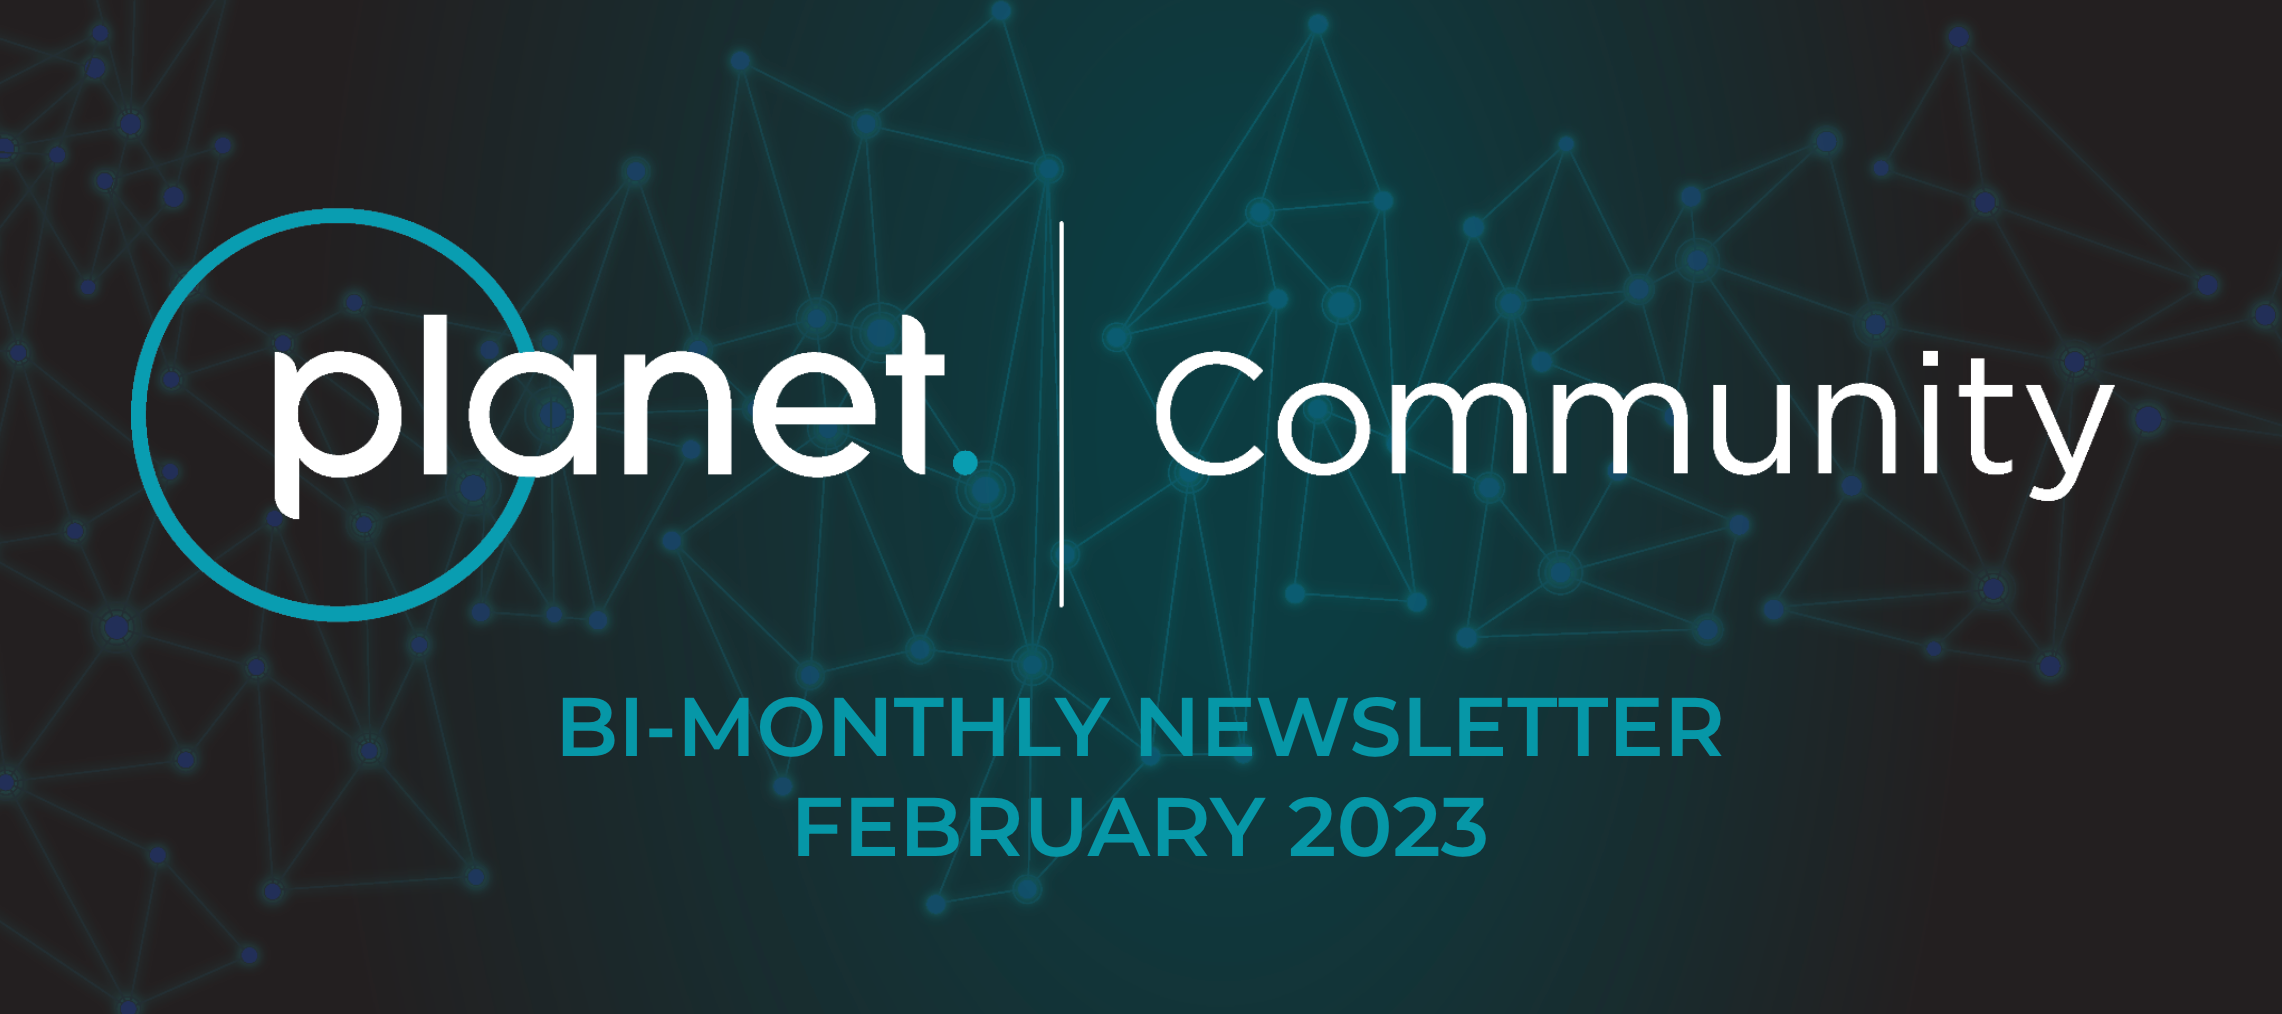 📰Planet Community Newsletter- February 2023📰